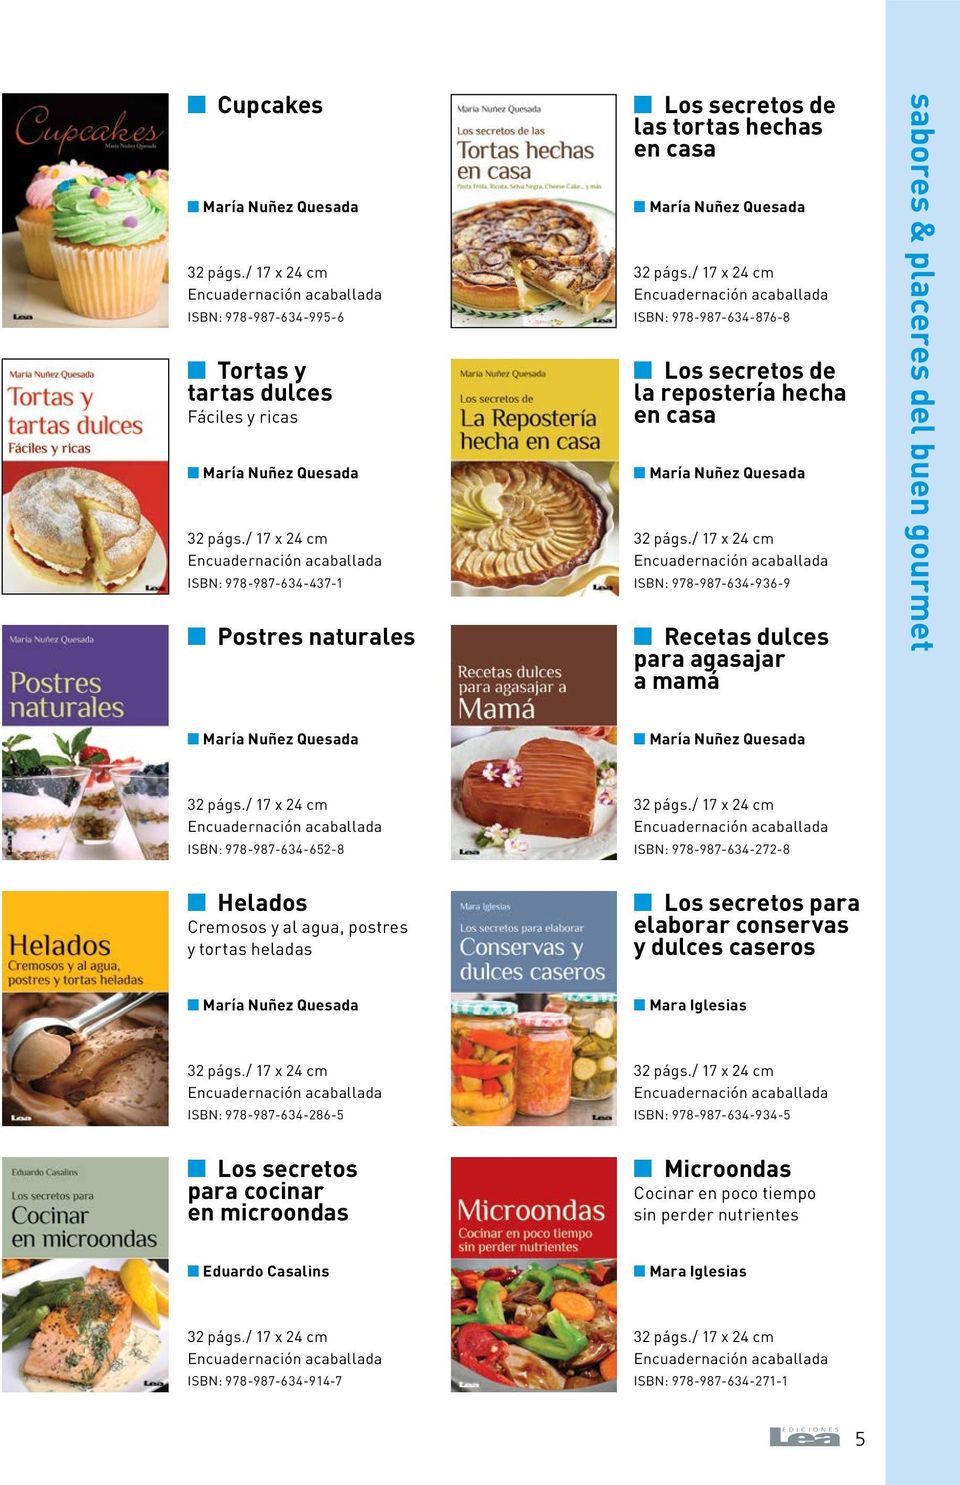 978-987-634-652-8 ISBN: 978-987-634-272-8 n Helados Cremosos y al agua, postres y tortas heladas n Los secretos para elaborar conservas y dulces caseros ISBN: